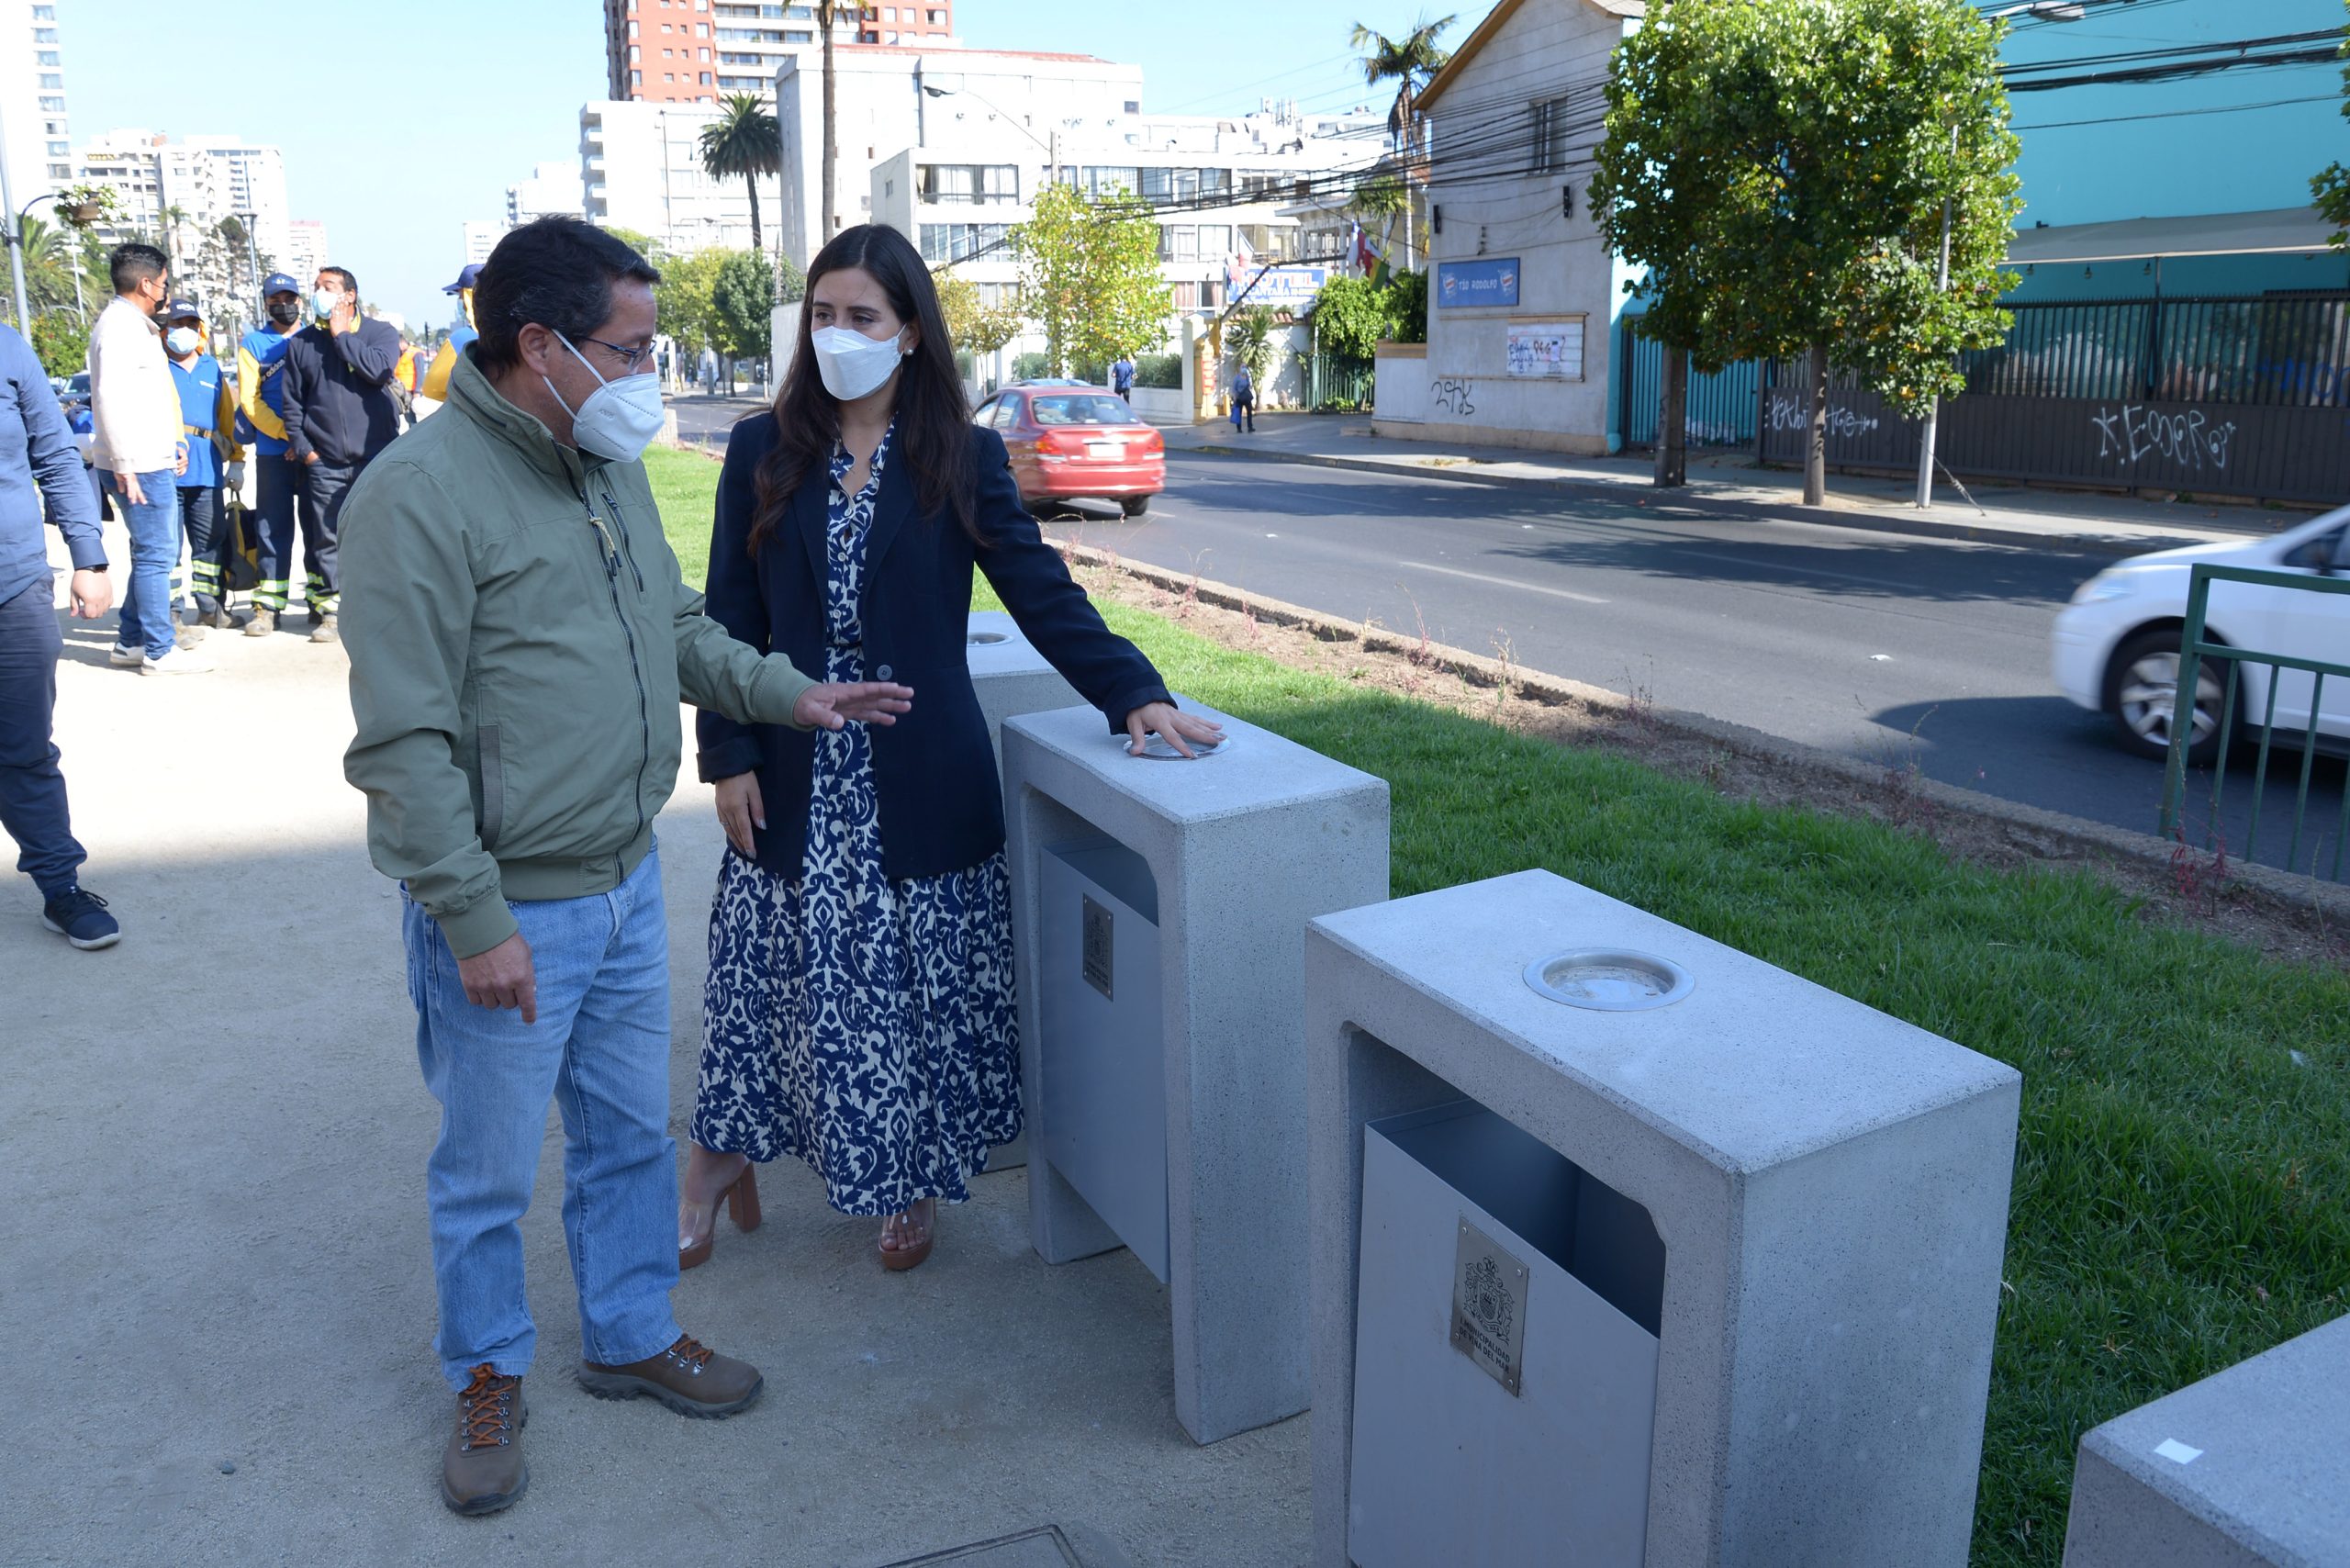 778 basureros nuevos potenciarán la limpieza de las calles en Viña del Mar